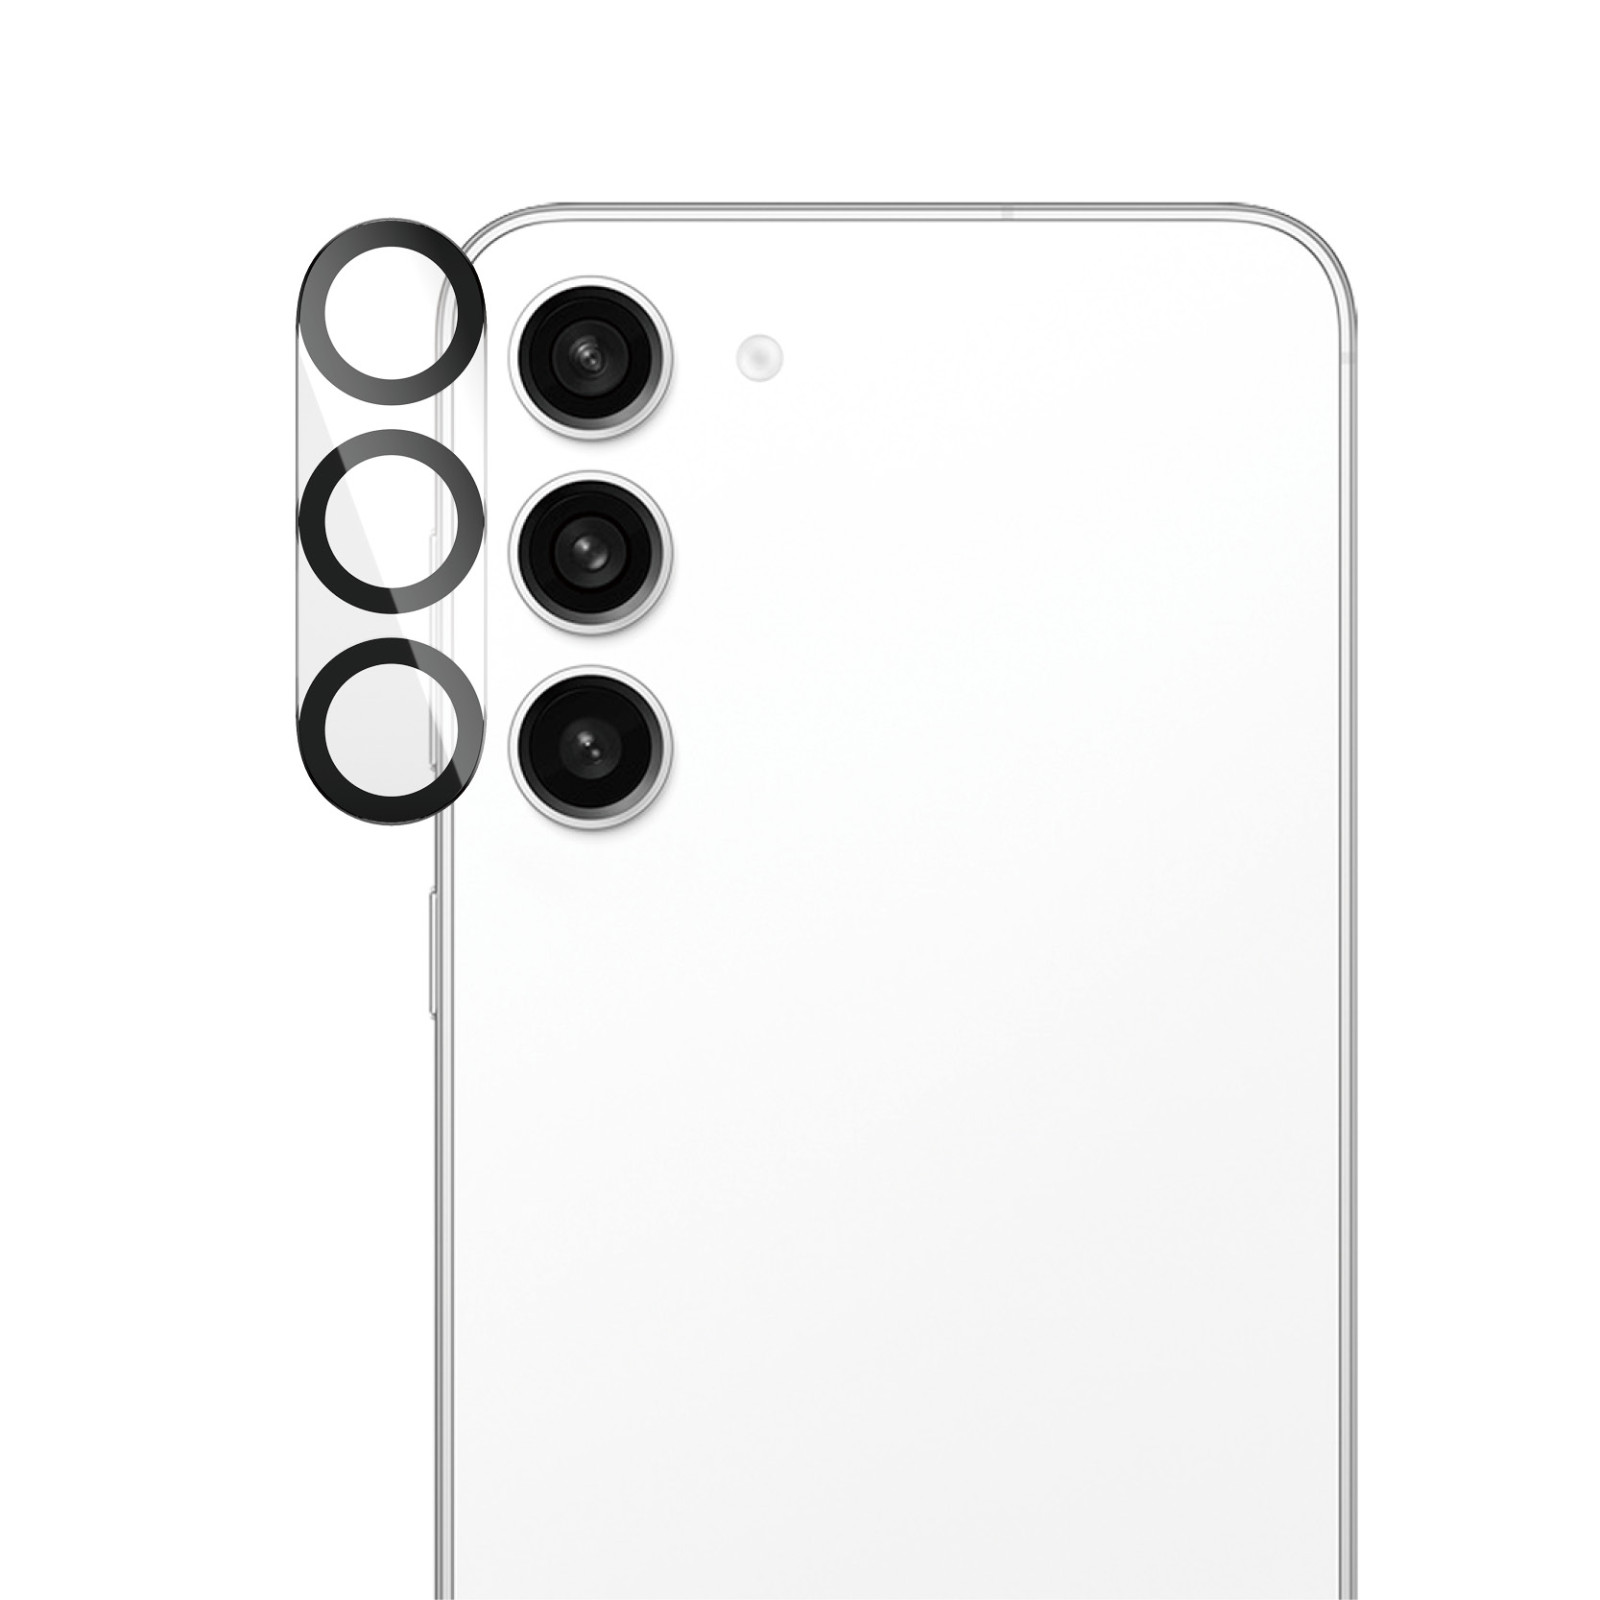 Стъклен протектор PanzerGlass  за камера, за Samsung Galaxy S23 FE, PicturePerfect Plate, Черен